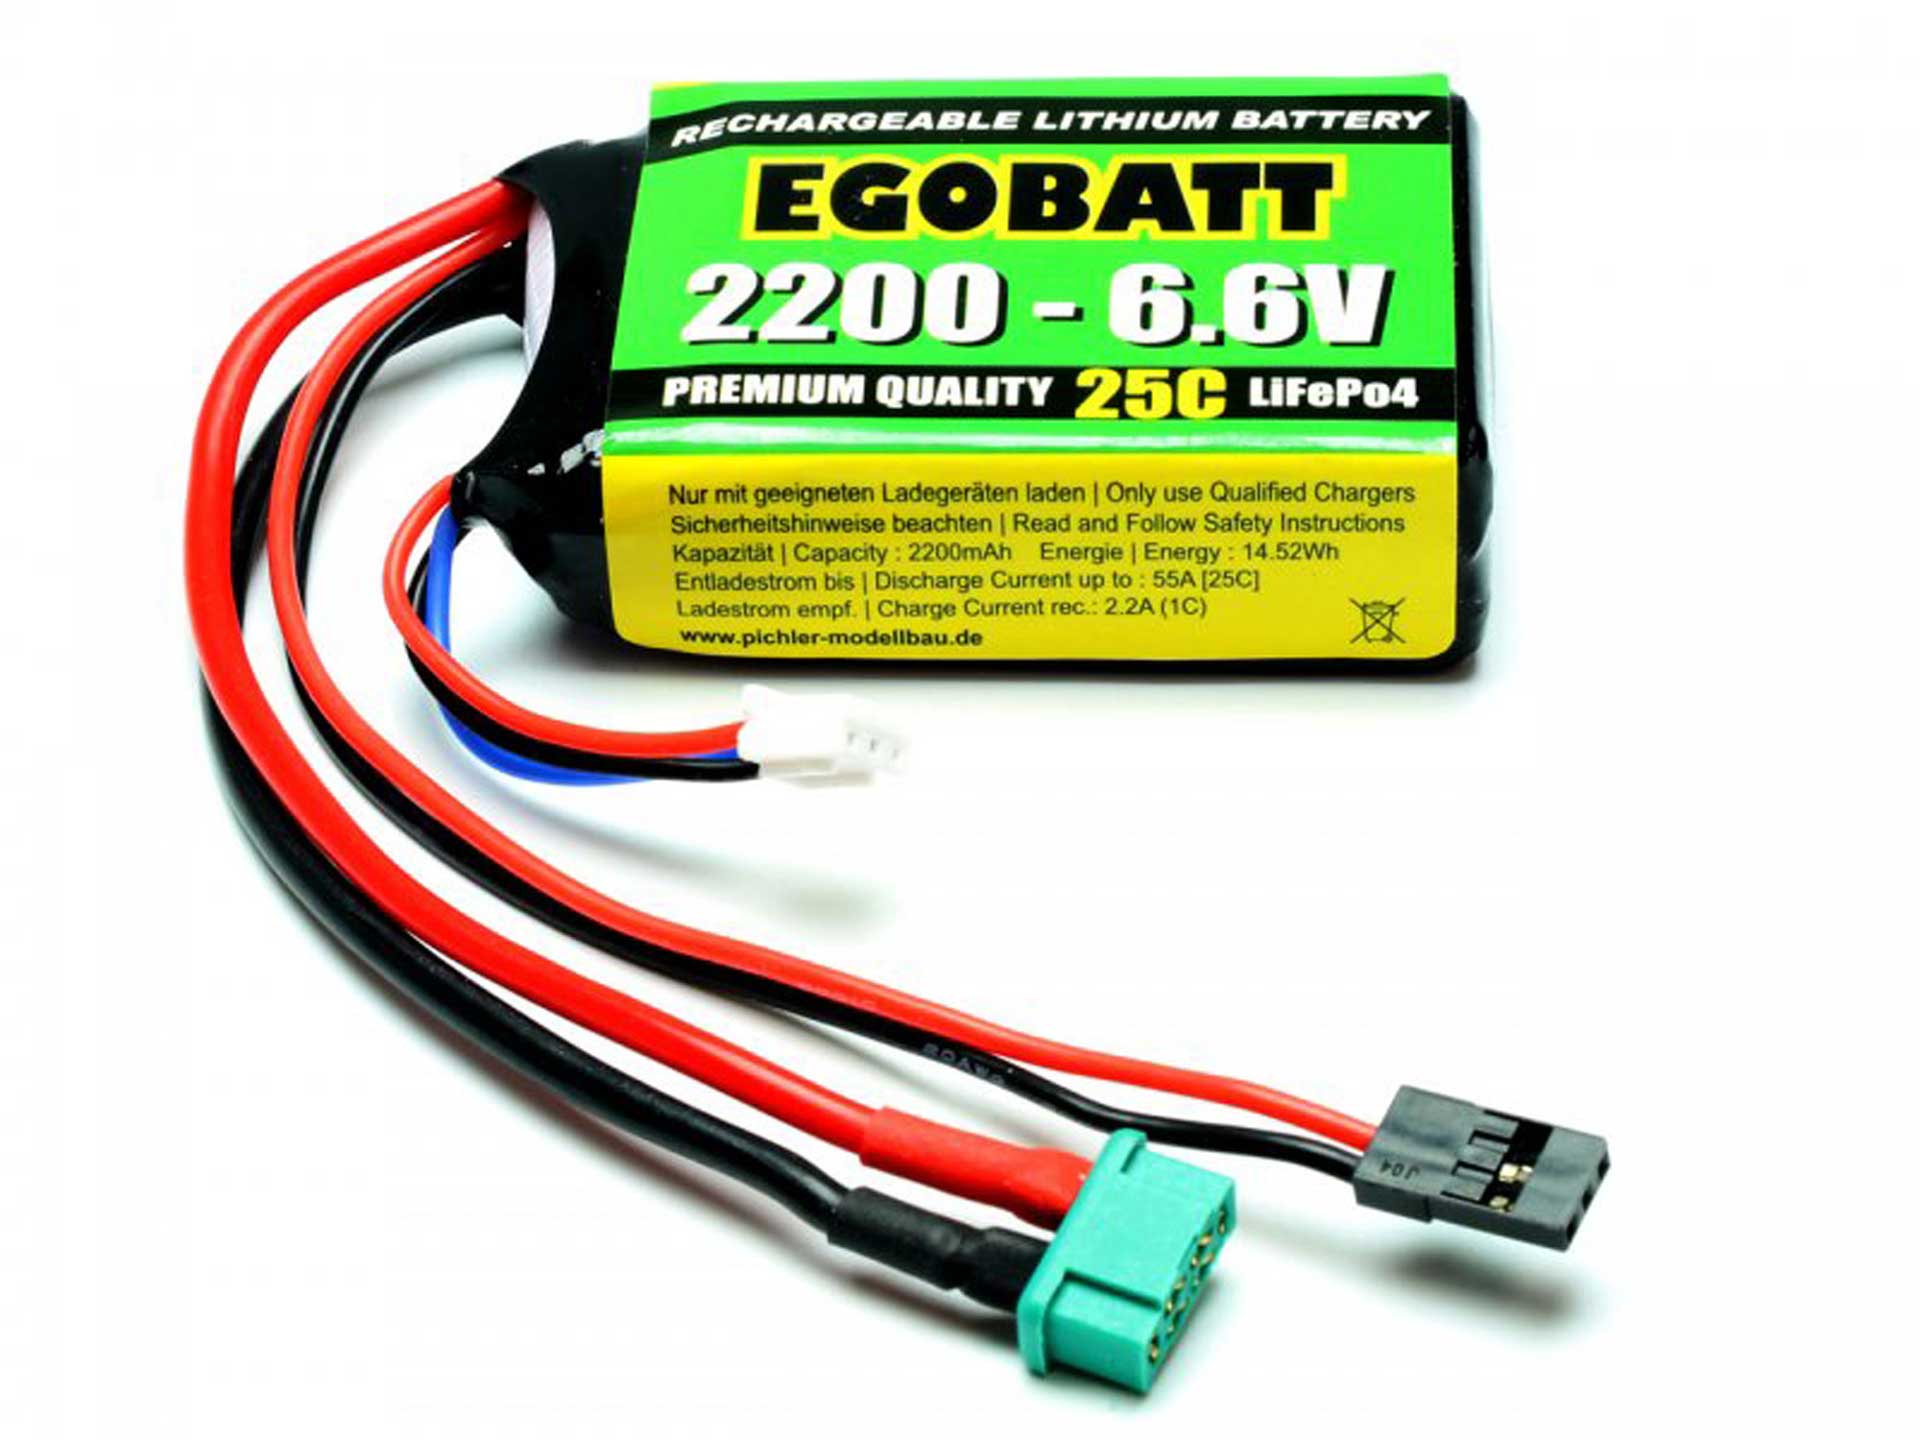 Pichler Accu LiFe EGOBATT 2200 - 6.6V (25C)